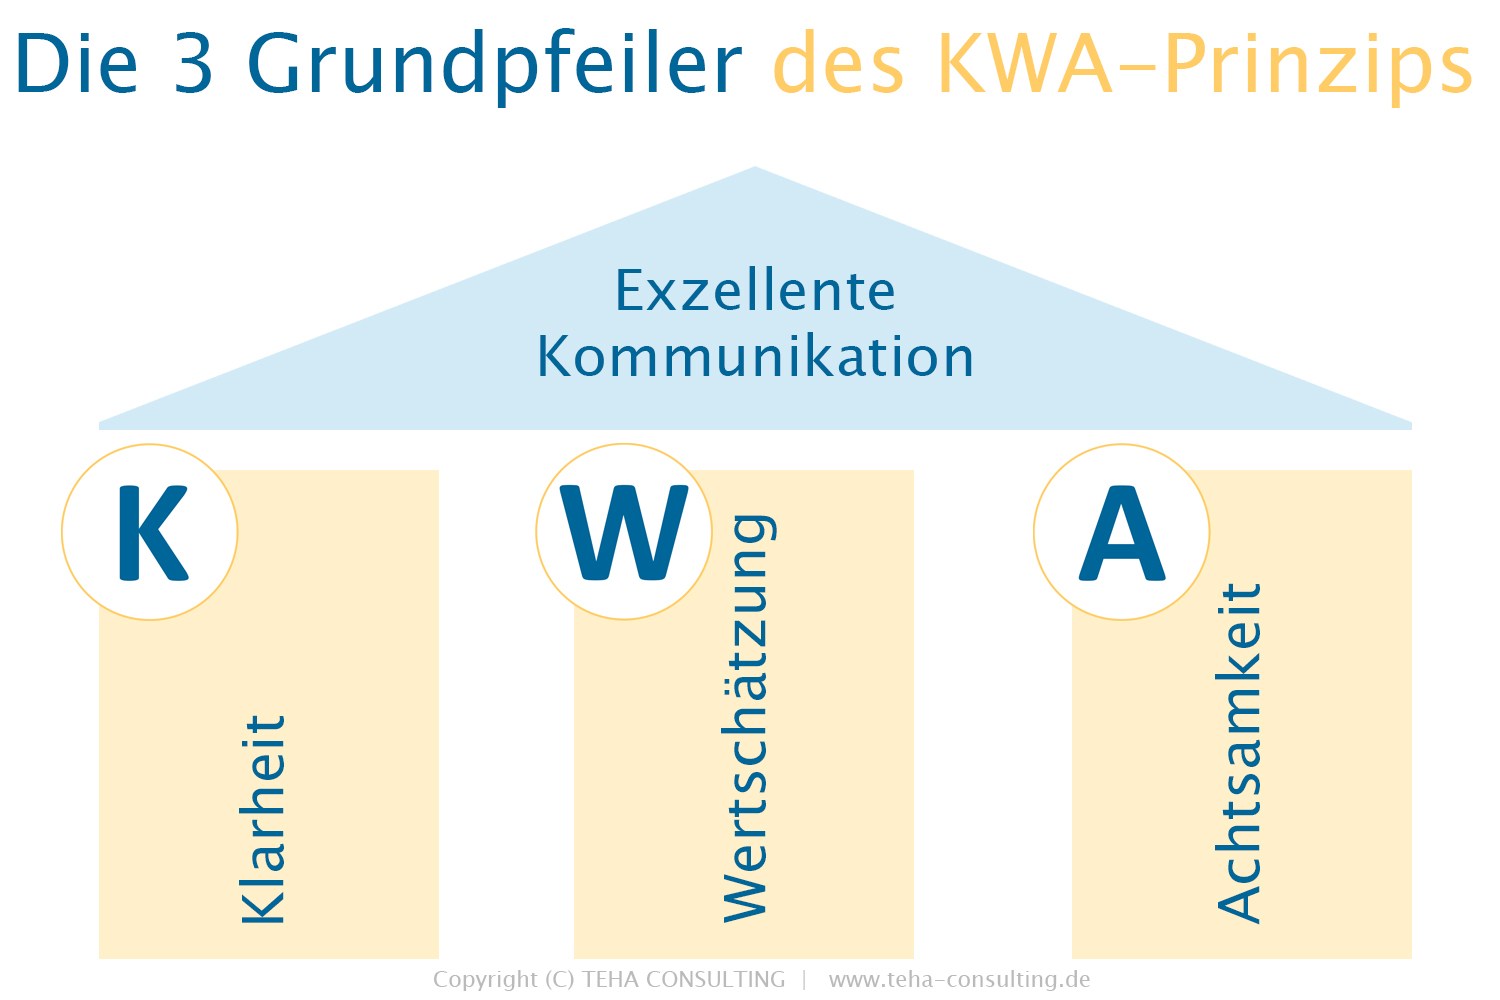 Das KWA Prinzip für exzellente Kommunikation. Klarheit, Wertschätzung und Achtsamkeit sind die 3 Grundpfeiler für exzellente Kommunikation.